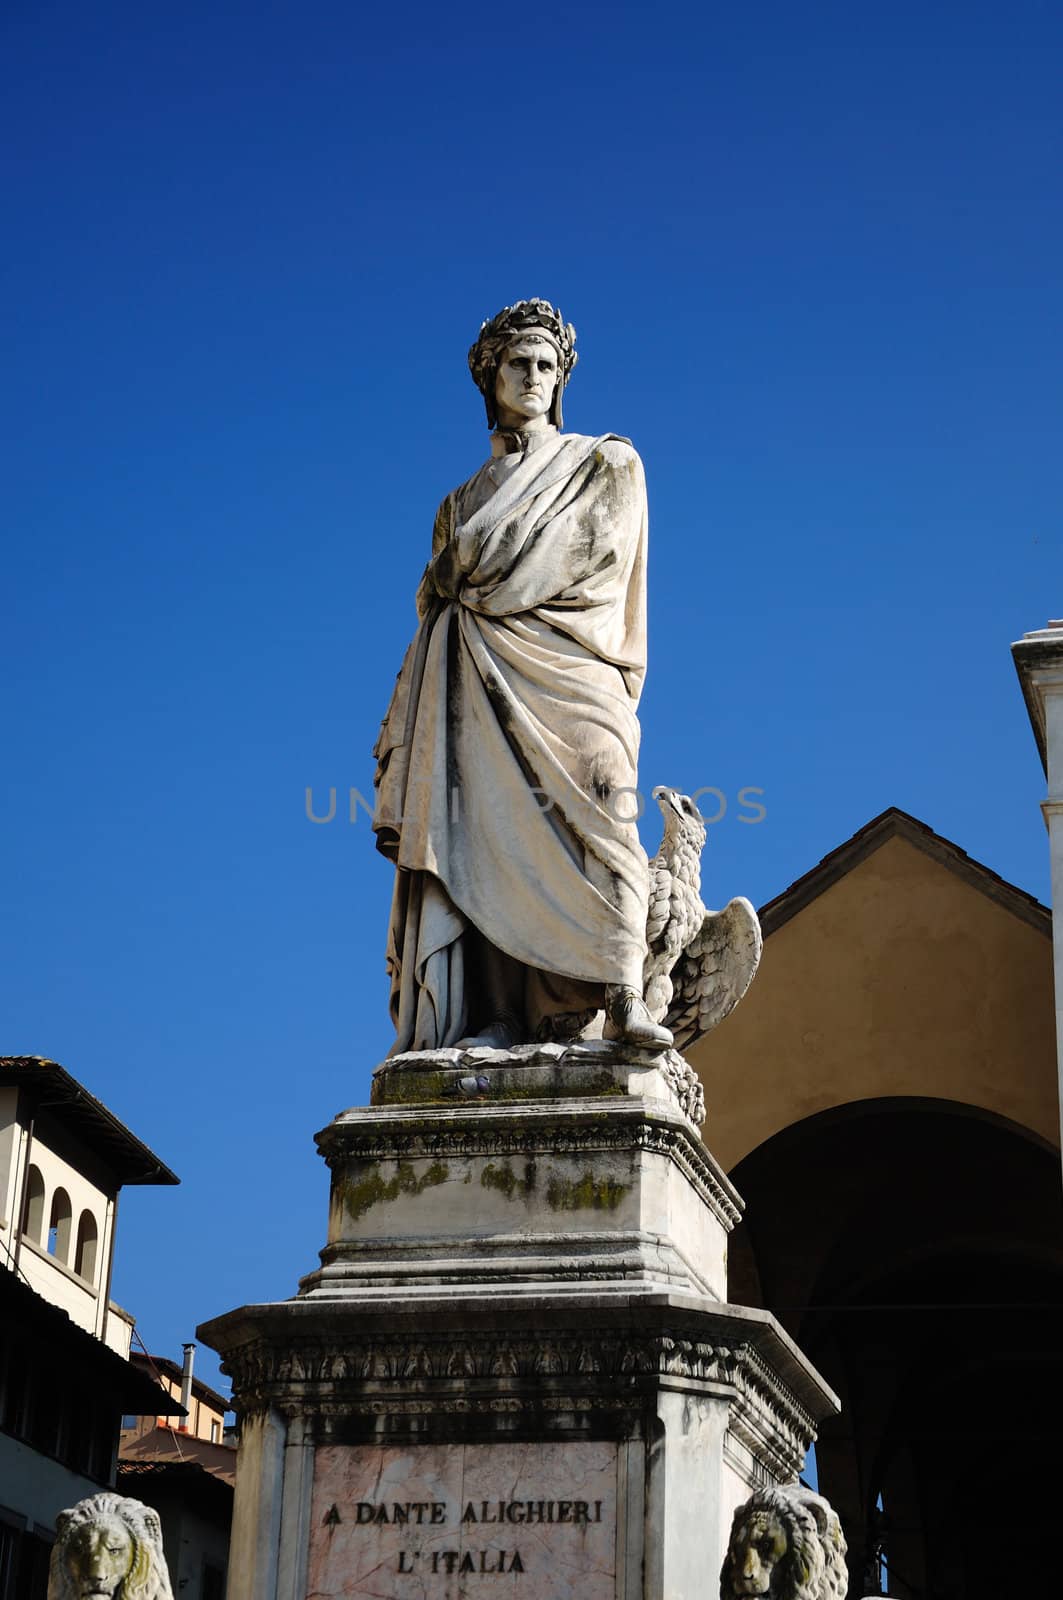 Dante Alighieri (Florence) by mizio1970